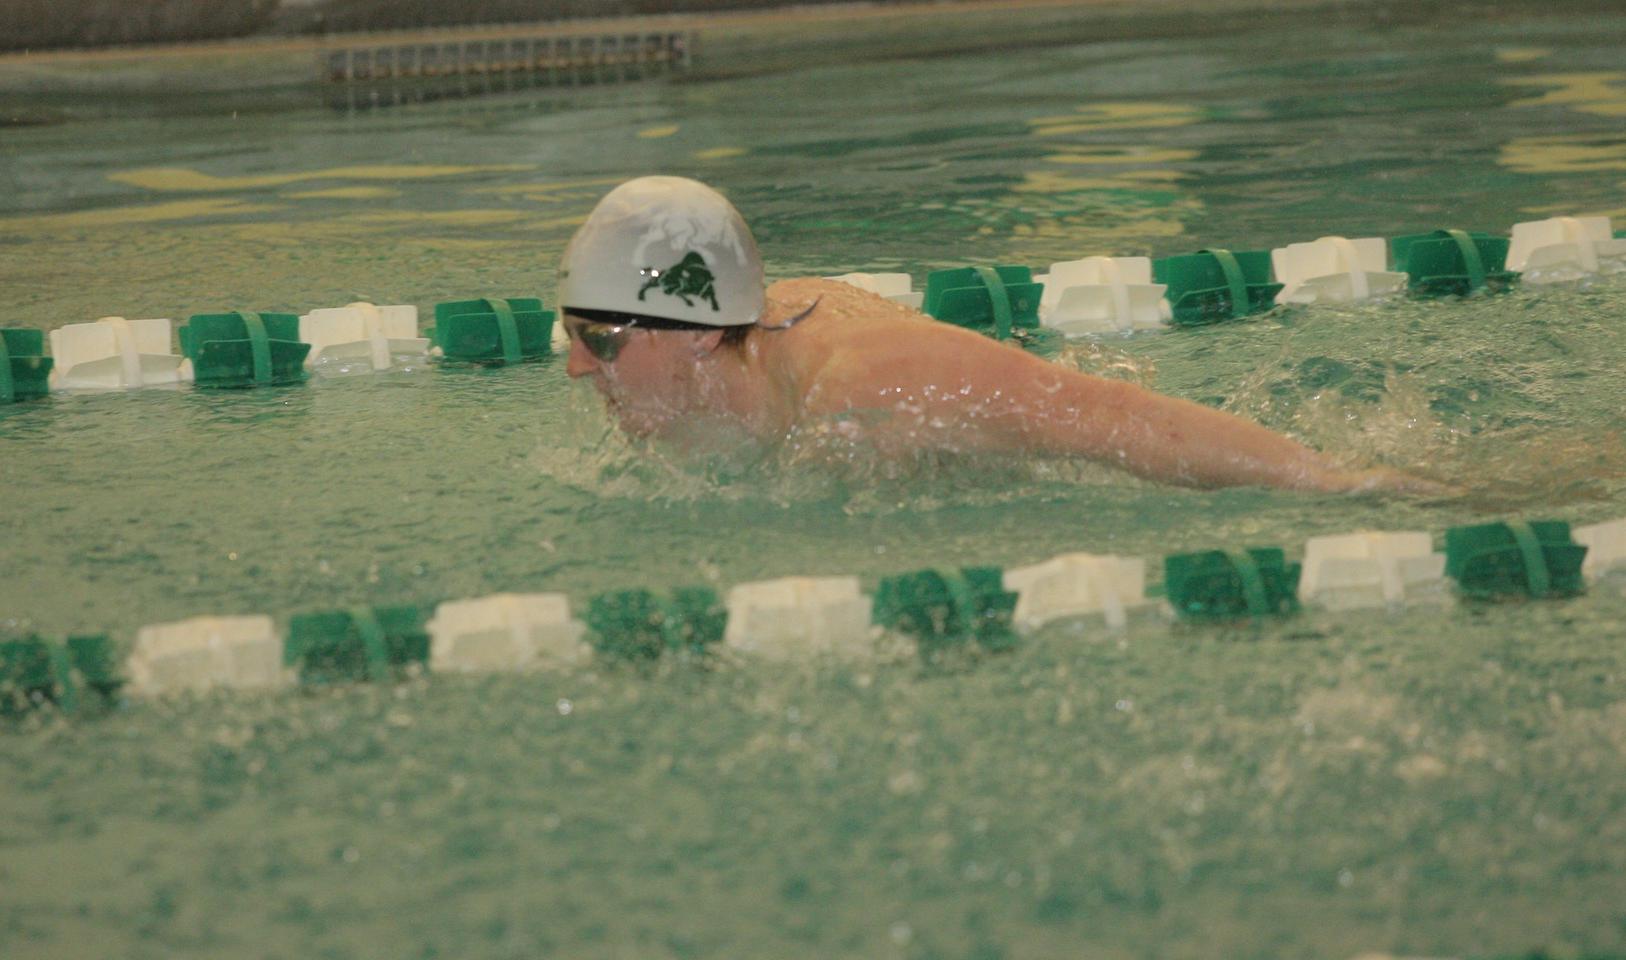 Stresky wins 200 backstroke at PAC Championships